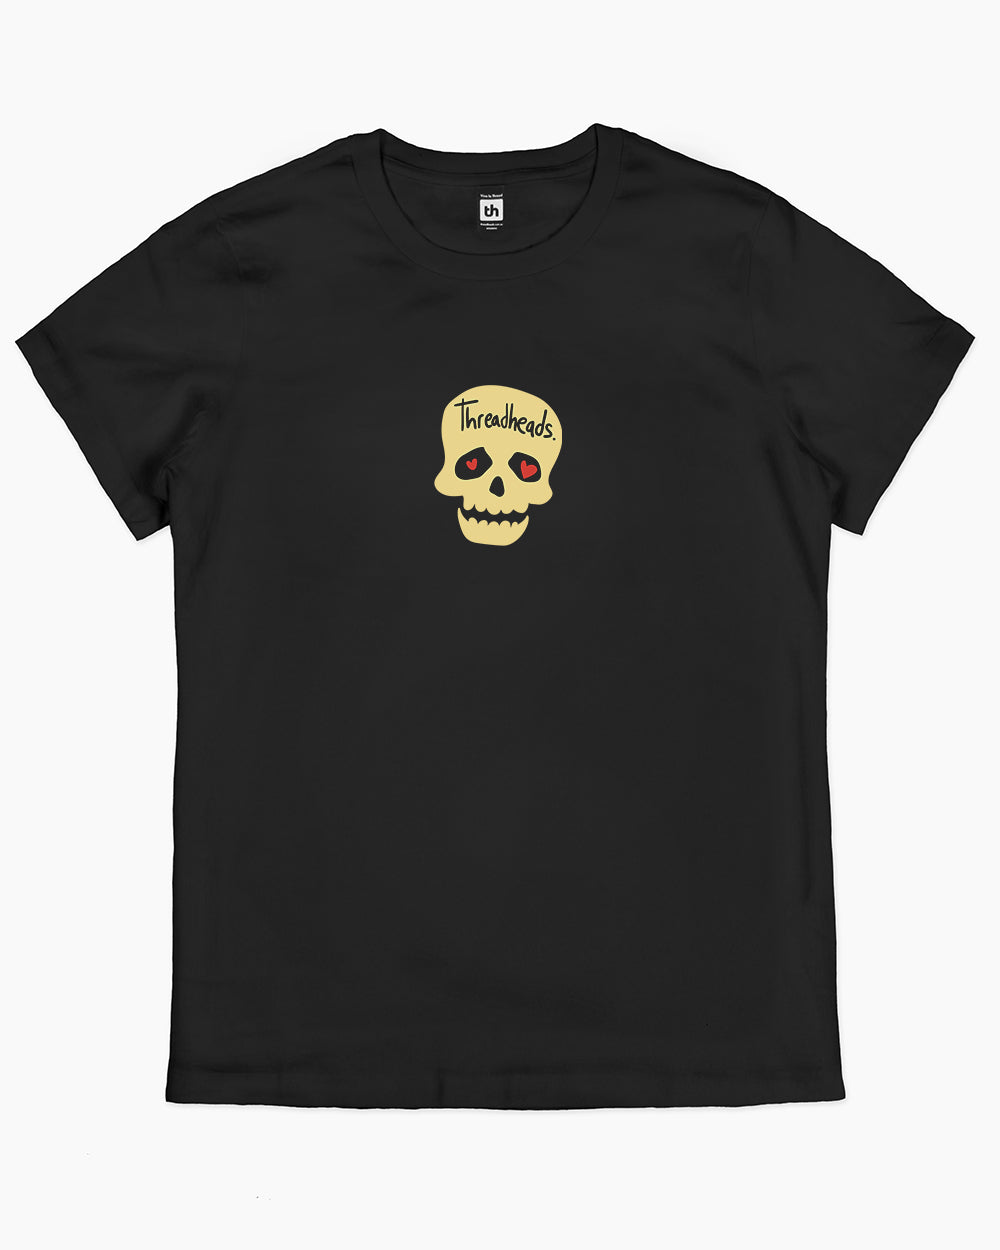 Inspire My Inner Serial Killer T-Shirt Australia Online #colour_black